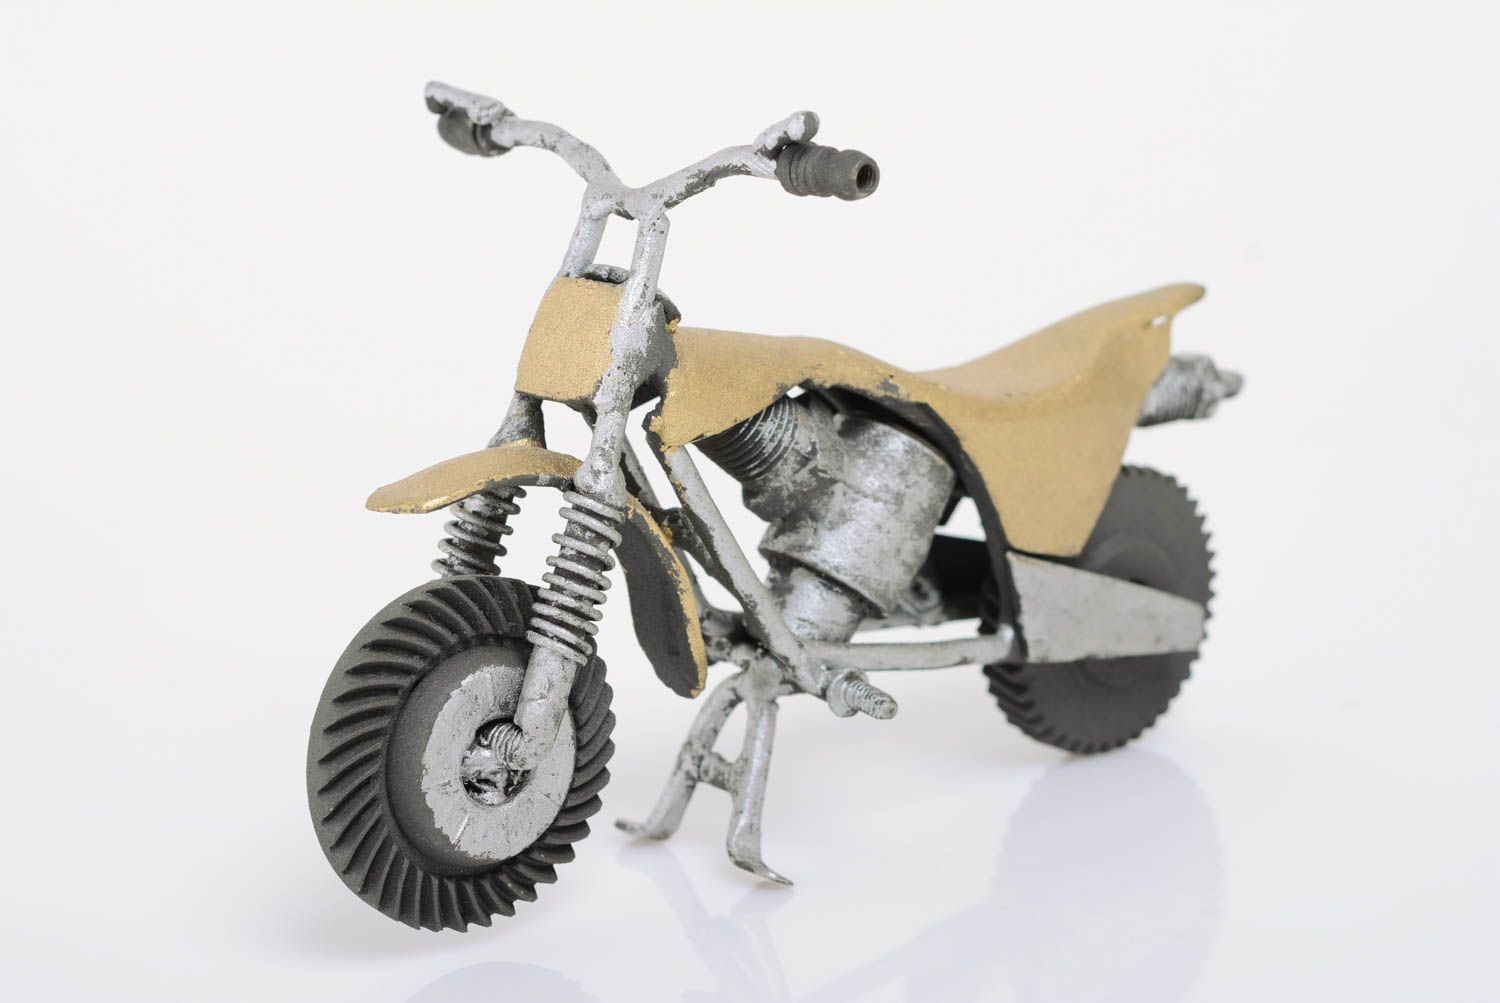 Металлическая статуэтка мотоцикла ручной работы в стиле техно арт красивая оригинальная фото 1